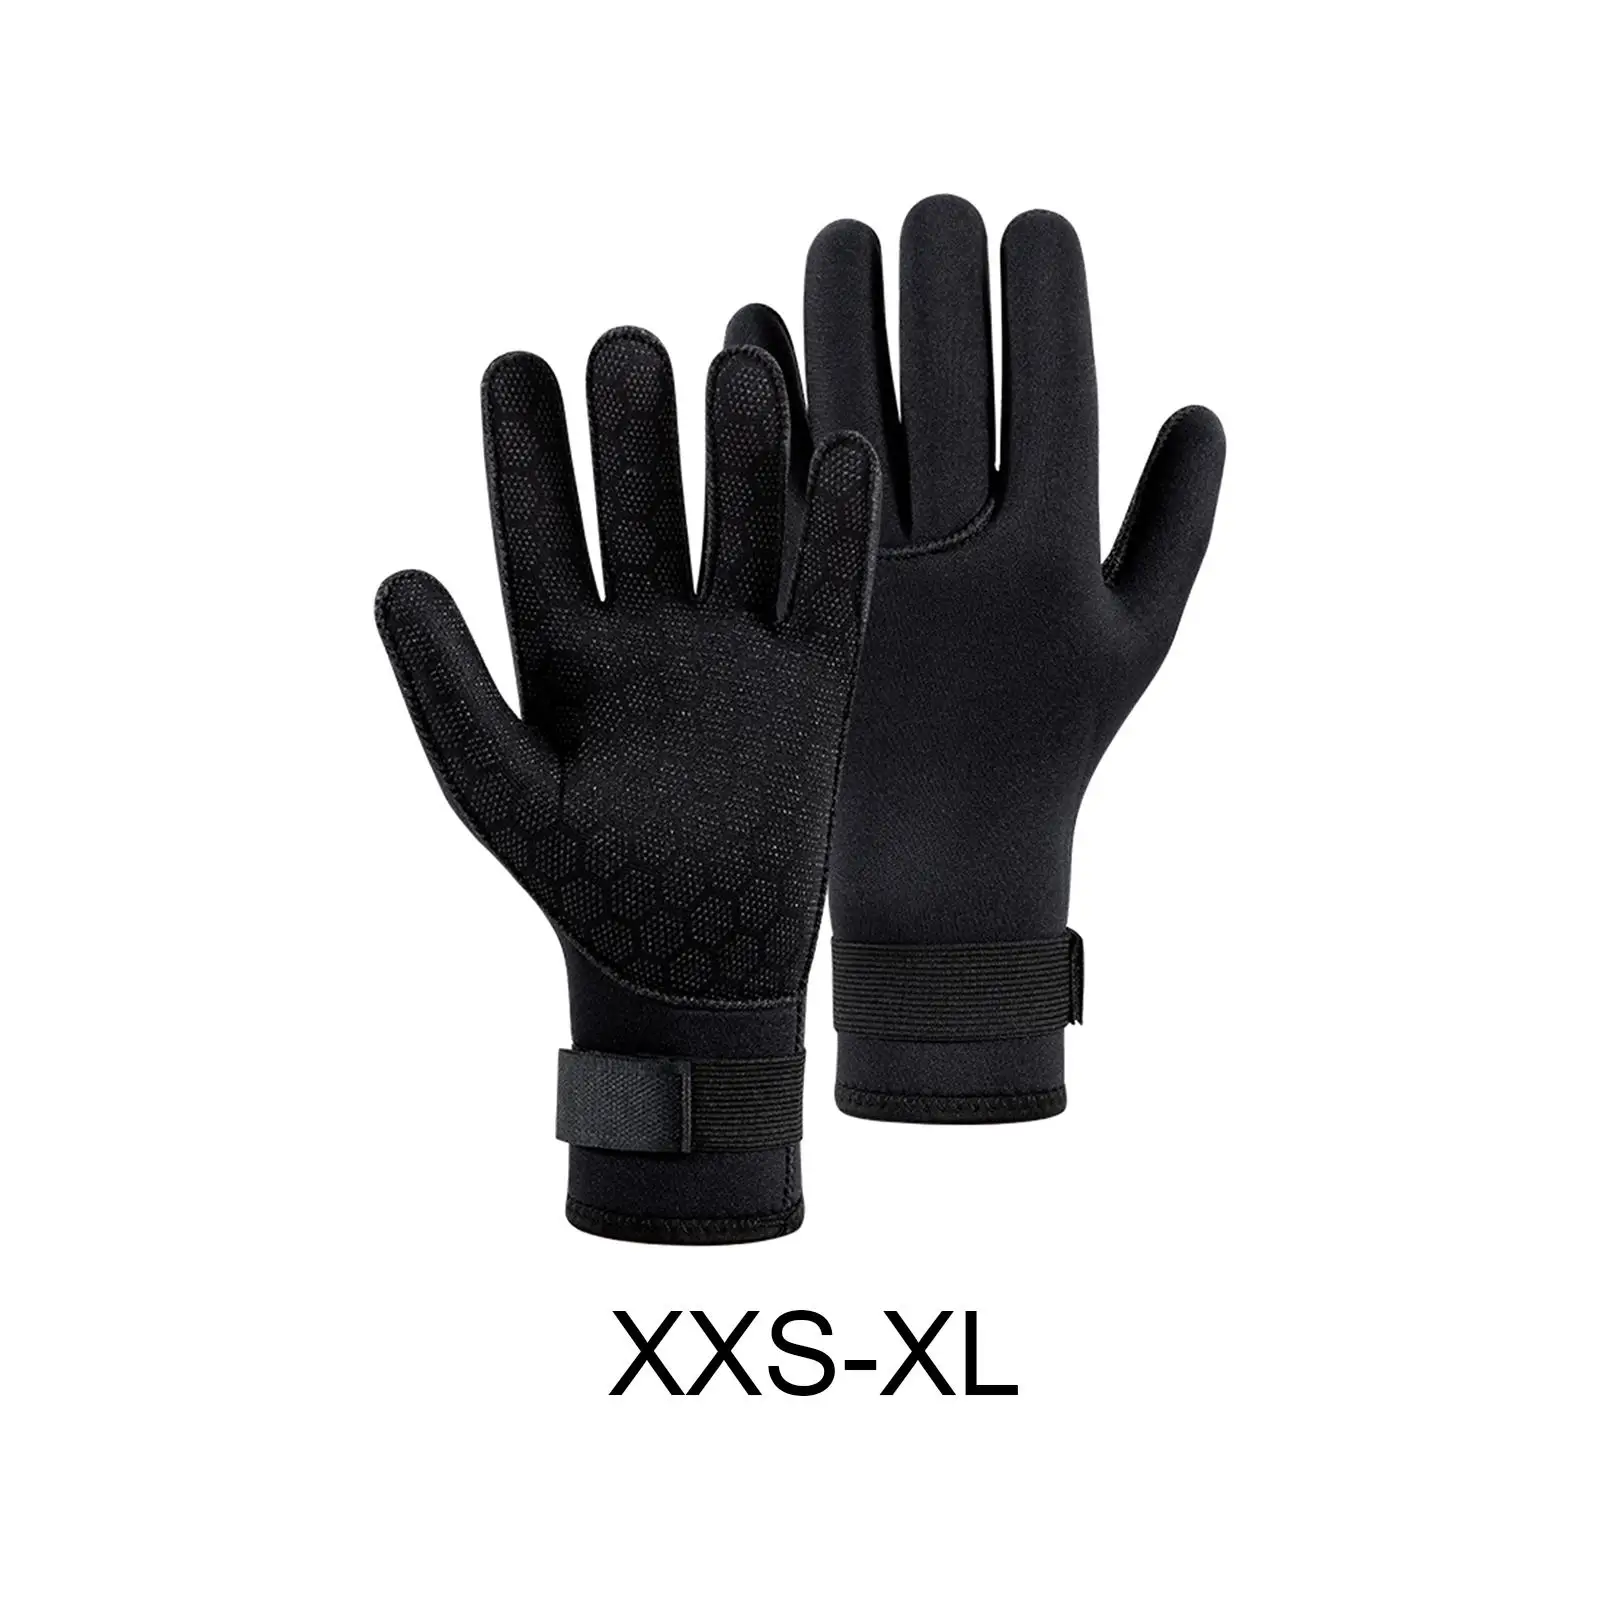 Scuba Diving Gloves Wetsuit Gloves Thermal 3mm Neoprene Gloves Water Gloves Swimming Glove for Men Women Kayaking Canoe Surfing